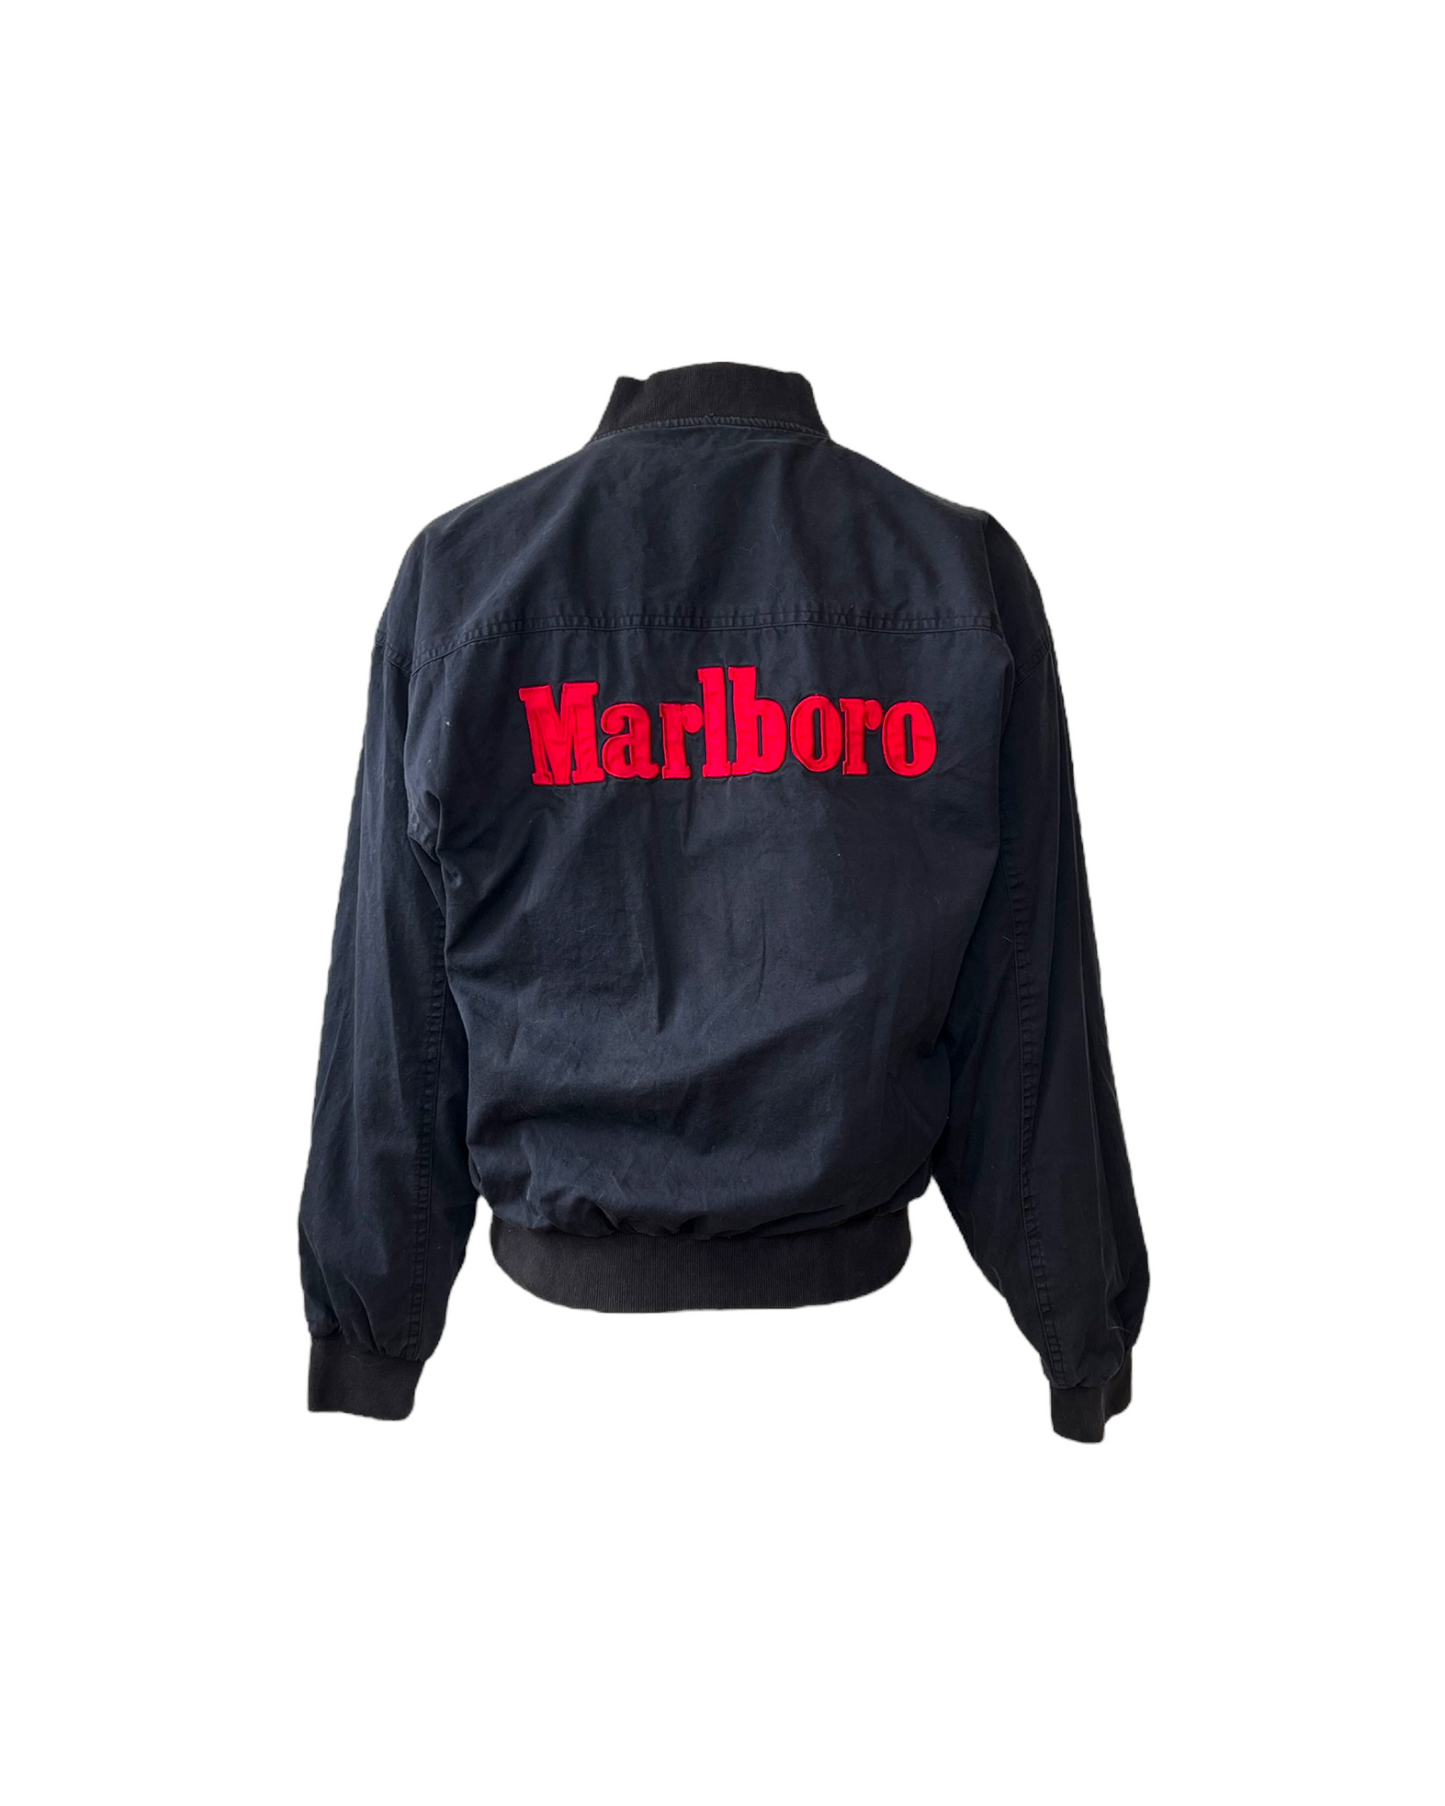 Vintage Reversible Marlboro Bomber Jacket